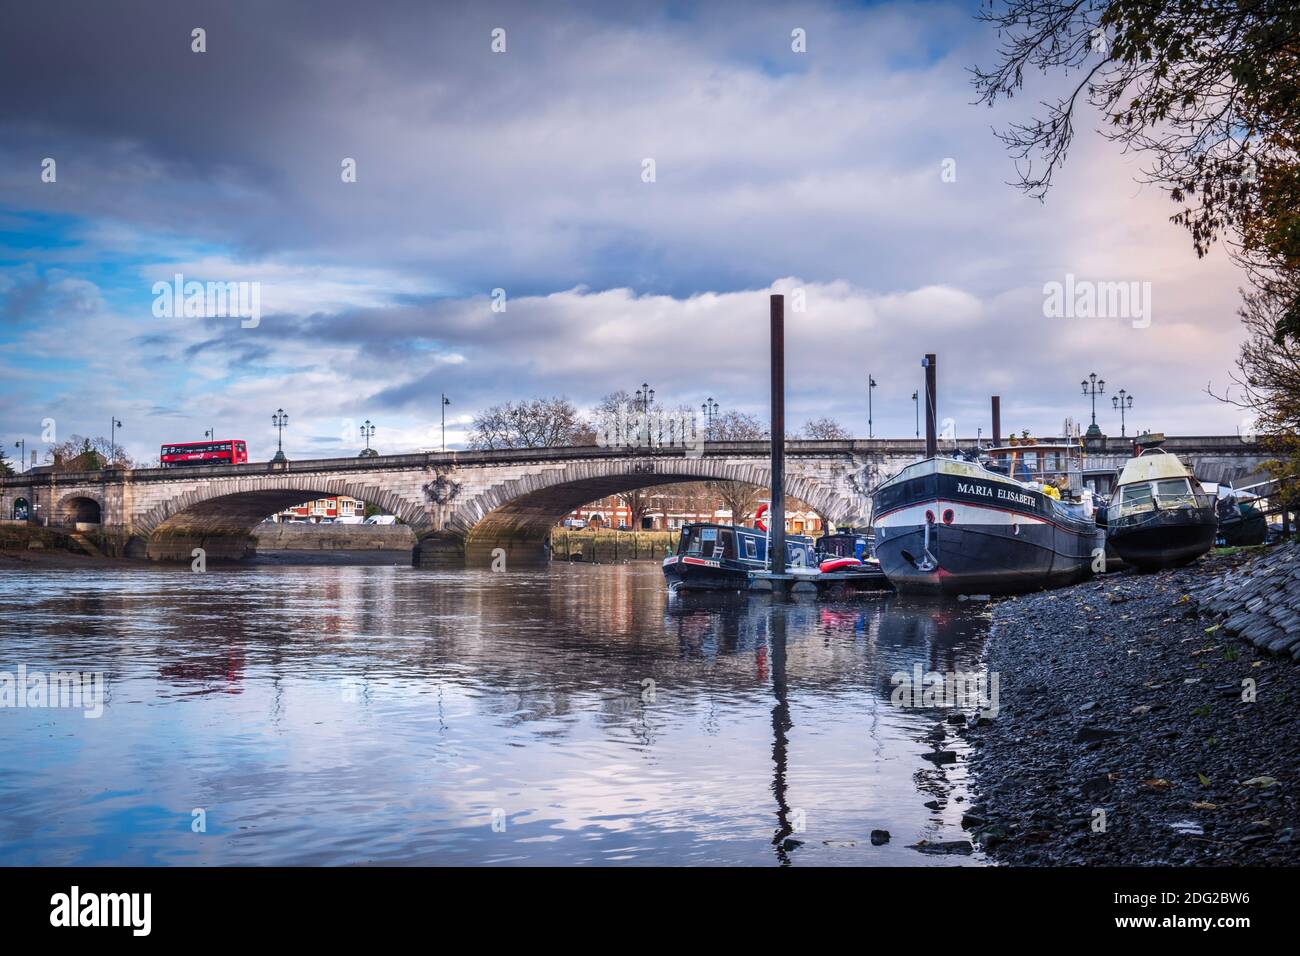 Regno Unito, Londra, Richmond-upon-Thames / Hounslow, Kew Bridge, un ponte classificato di grado II sul Tamigi, Tamigi con bassa marea, case galleggianti Foto Stock